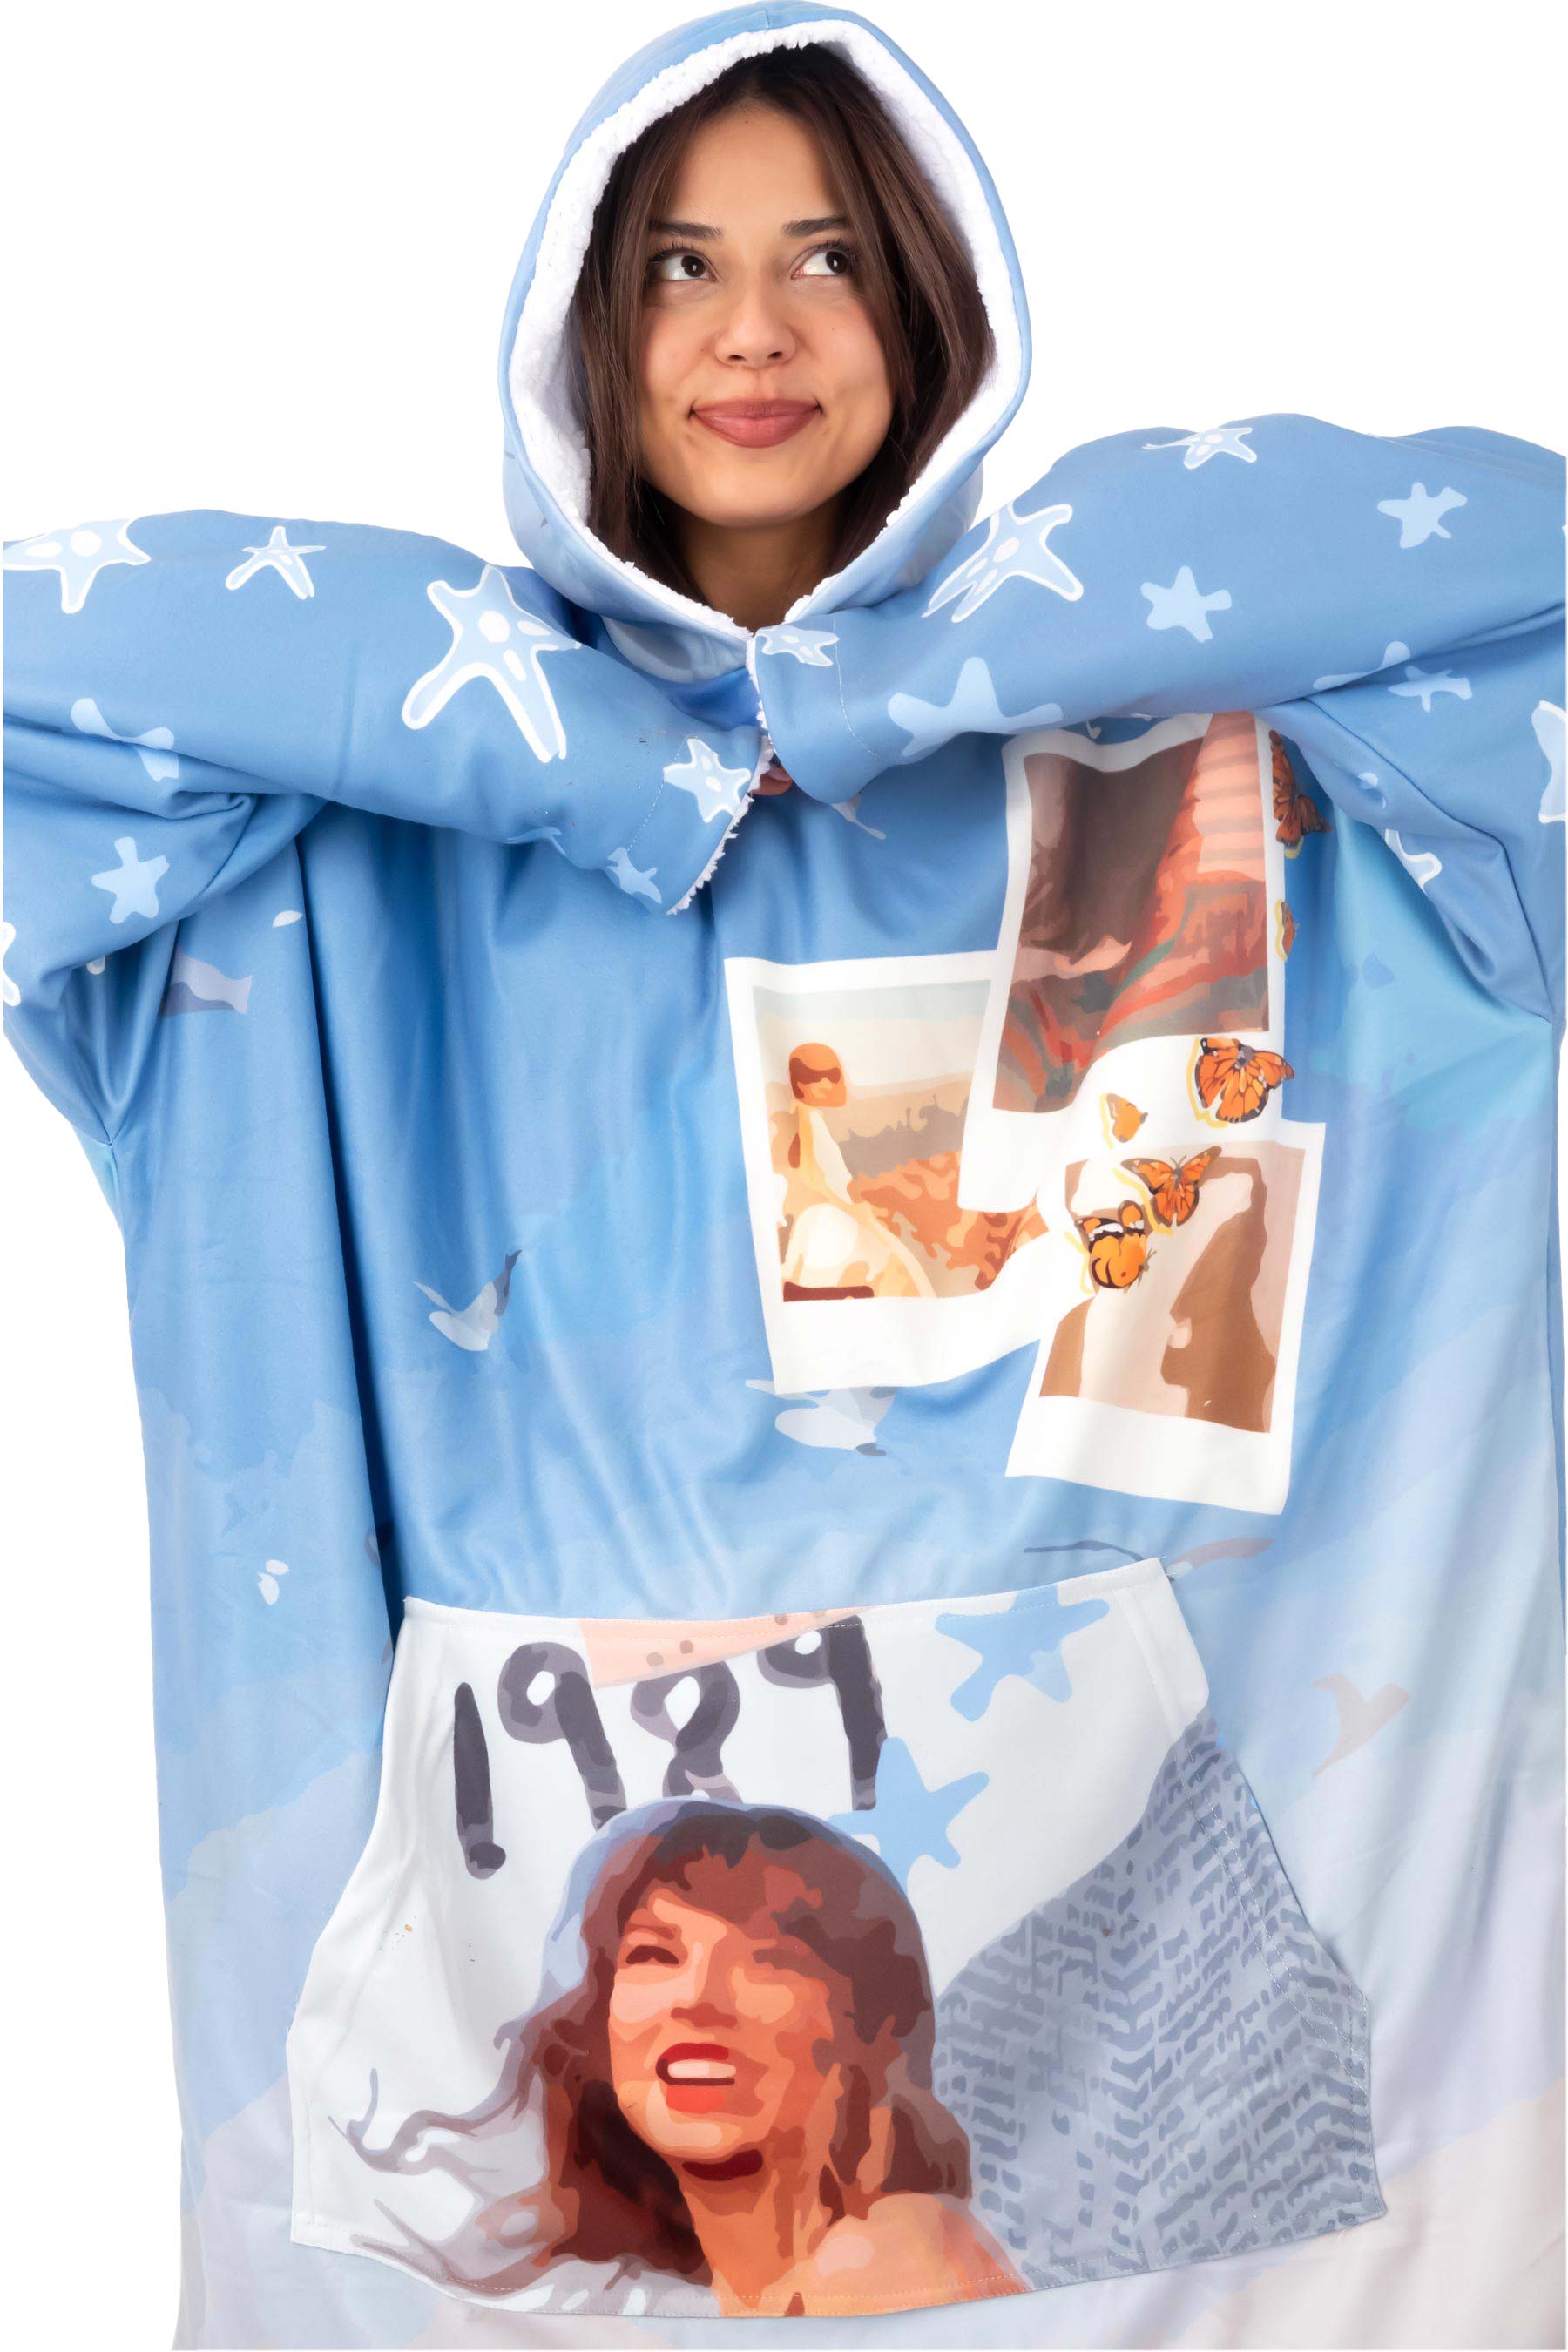 taylor 1989 hoodie blanket